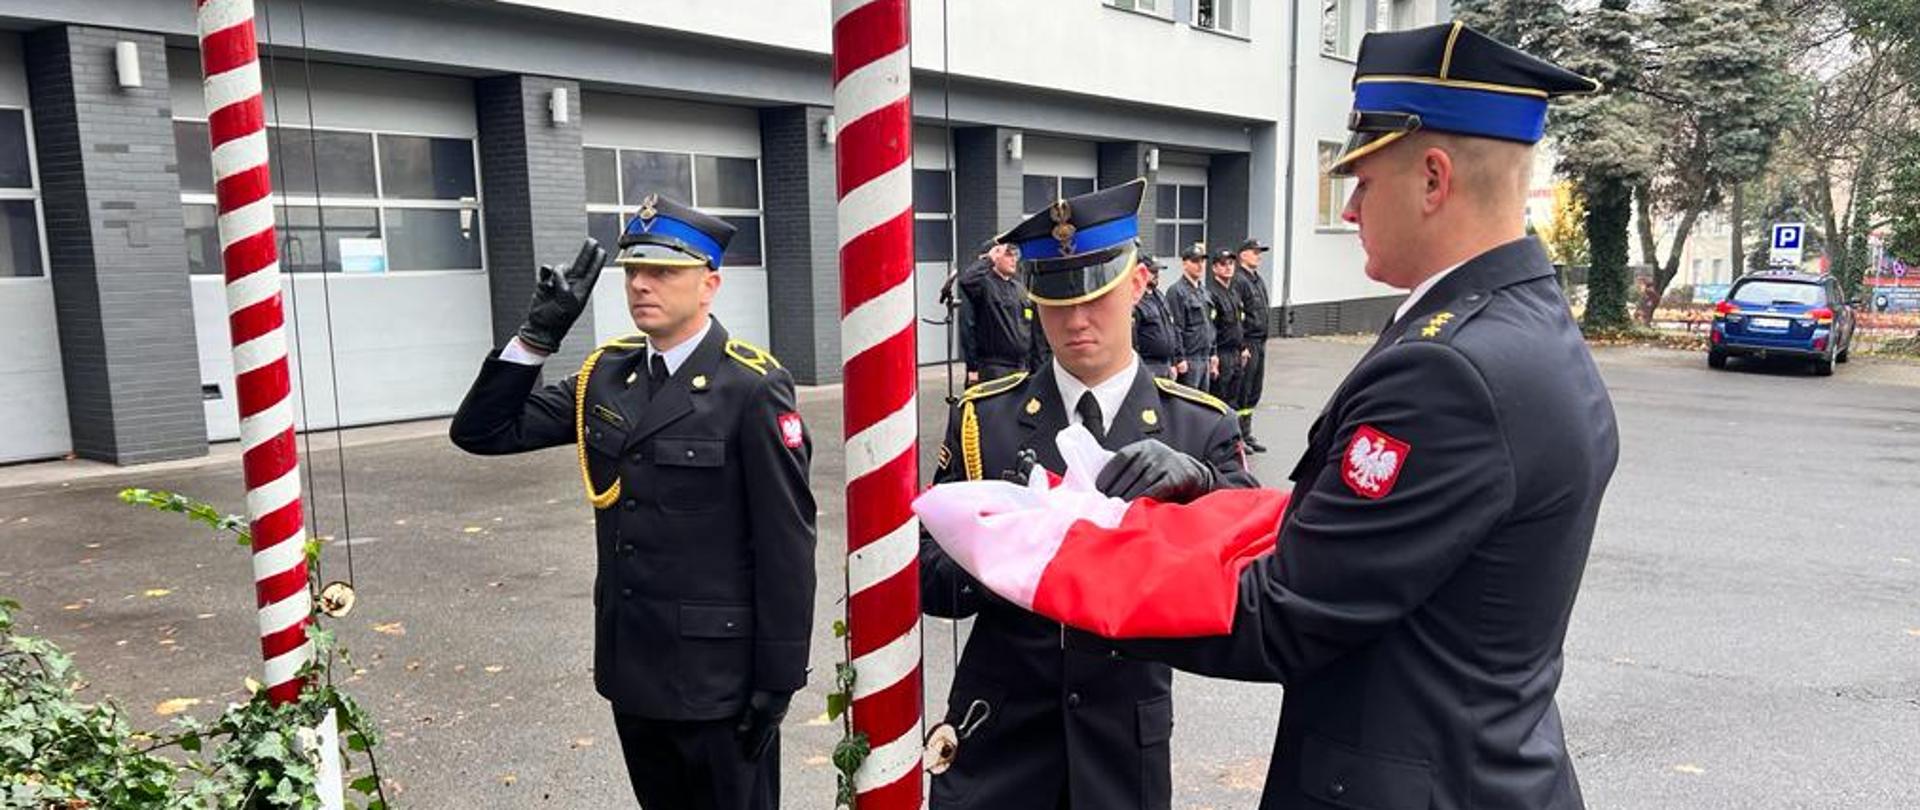 Zdjęcie przedstawia trzech funkcjonariuszy Państwowej Straży Pożarnej. Funkcjonariusze ubrani są w mundury galowe w kolorze ciemnym granatowym. Dwóch z nich przygotowuje flagę do wciągnięcia na maszt. Zdjęcie wykonane przed Jednostką Ratowniczo – Gaśniczą numer 1 w Radomiu.